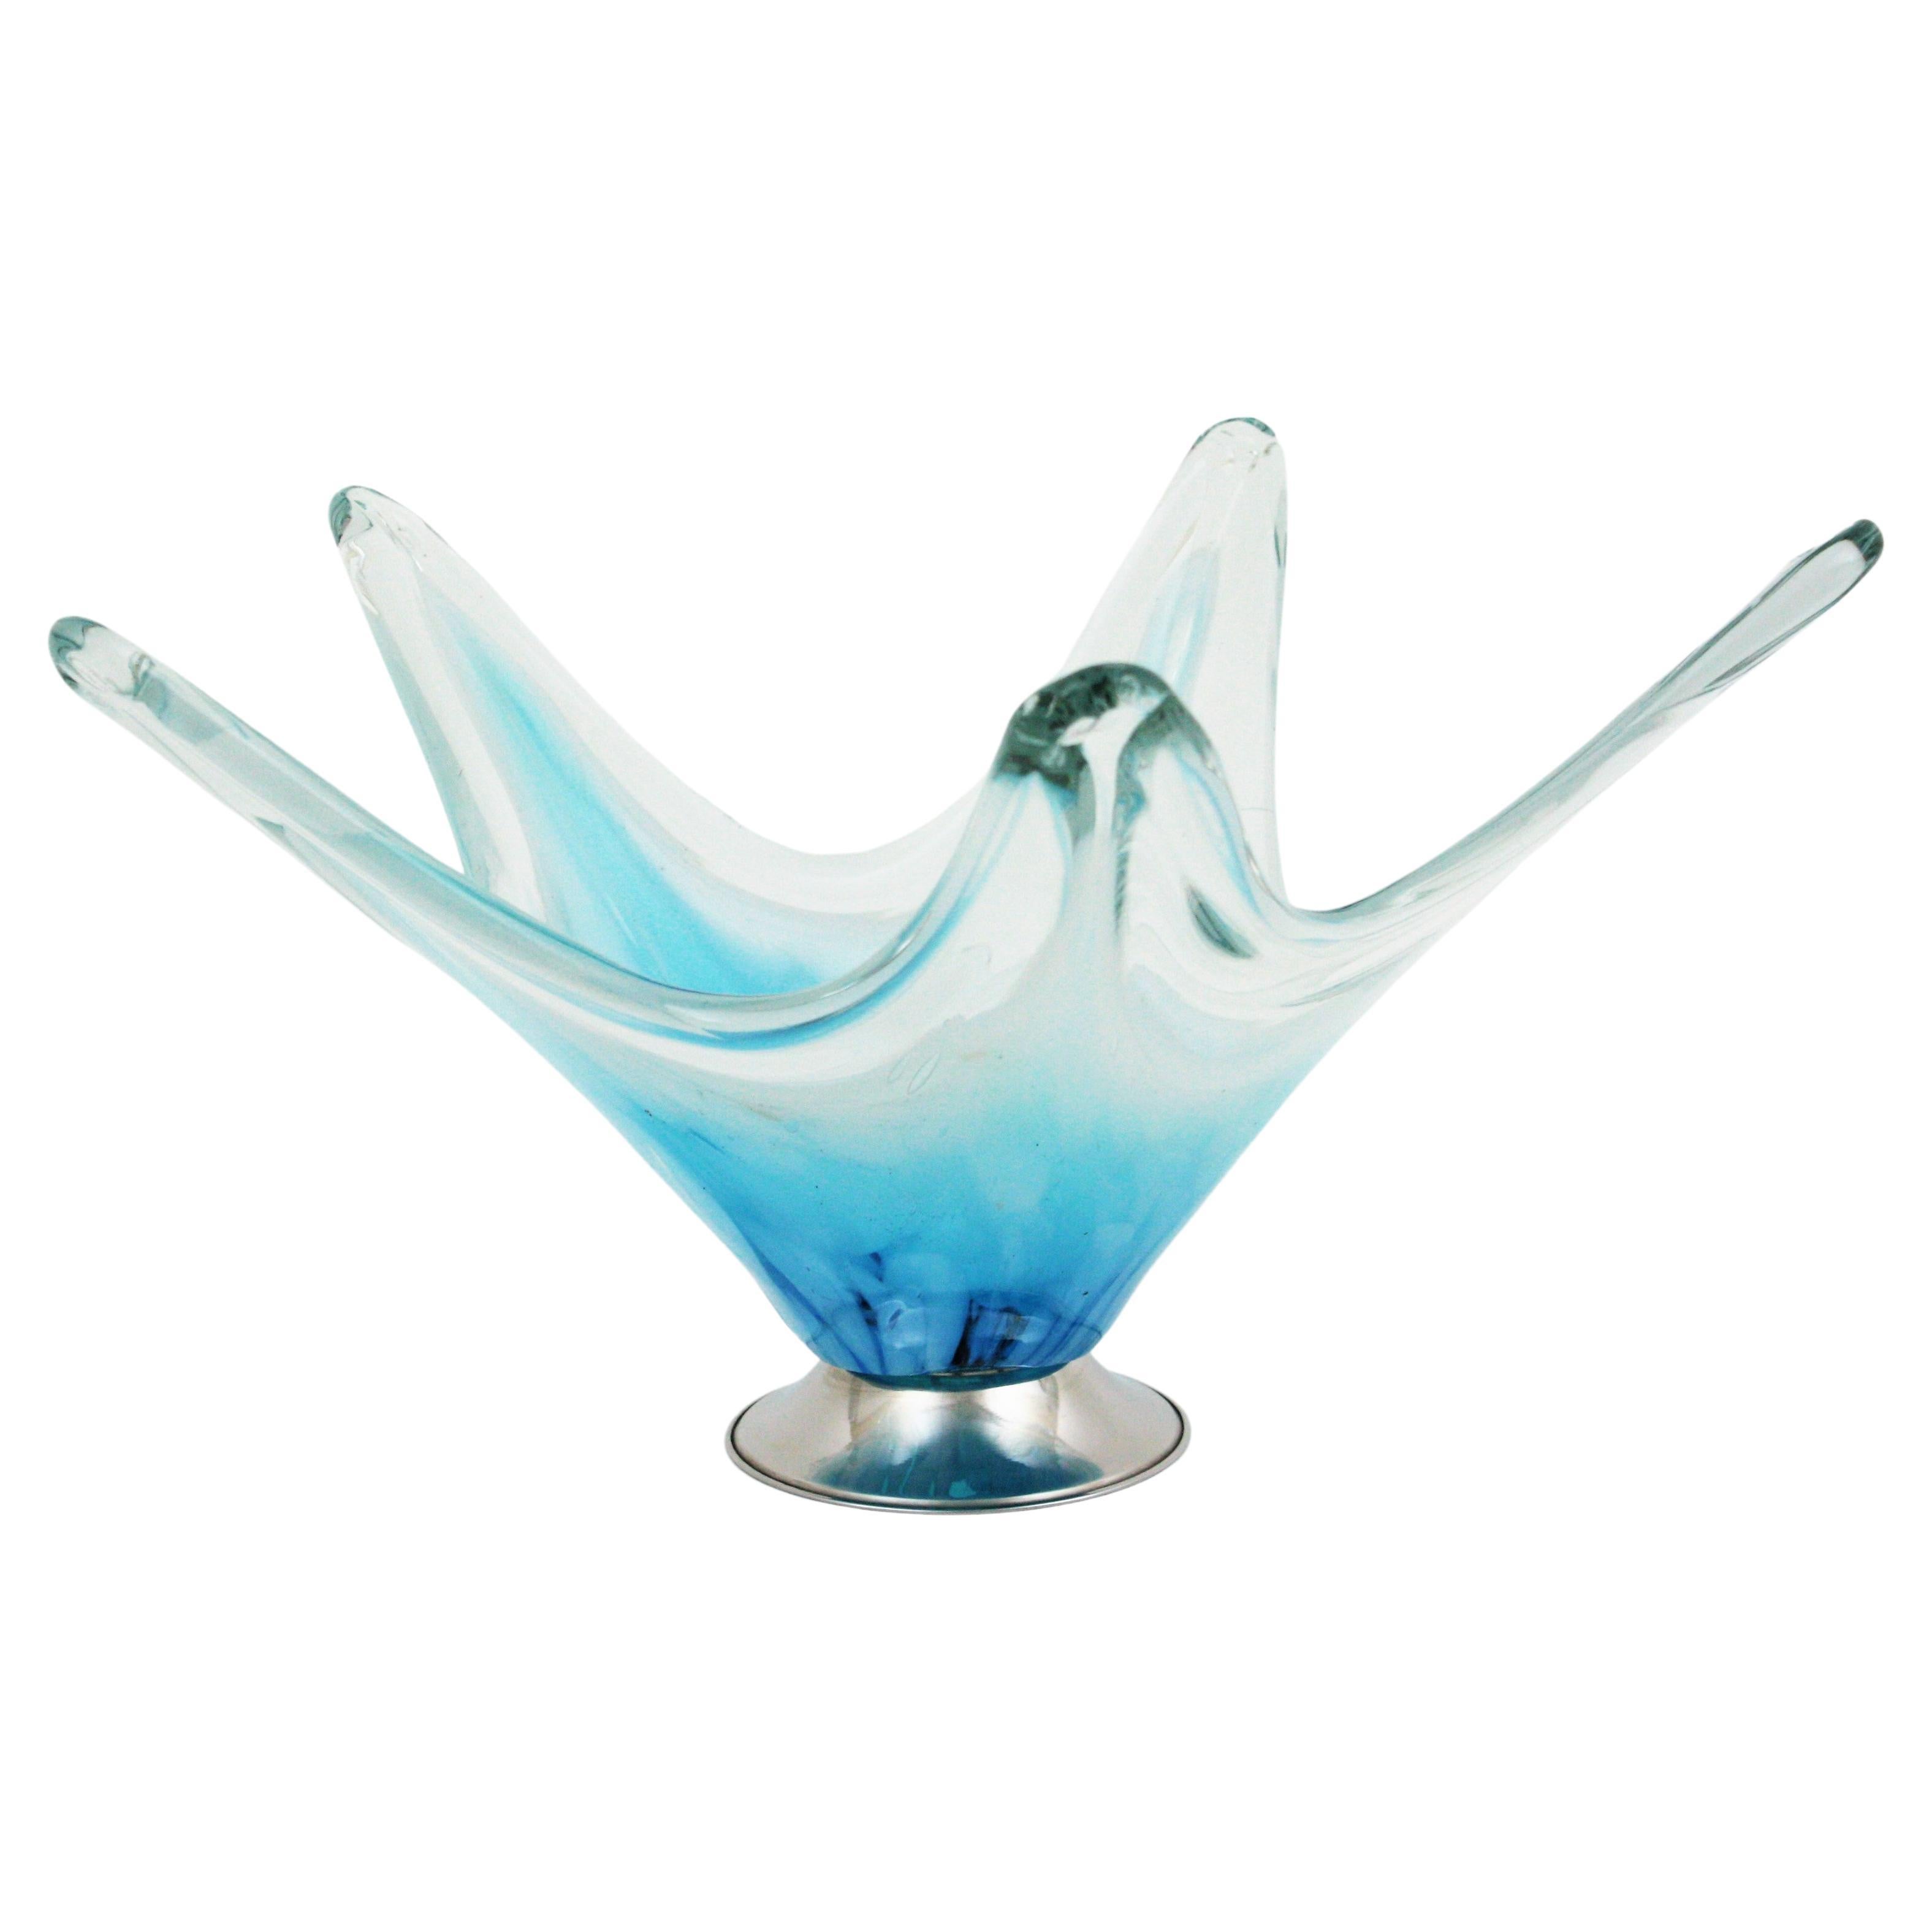 Italienische modernistische Tafelaufsatz-Vase aus Muranoglas in Blau und Weiß